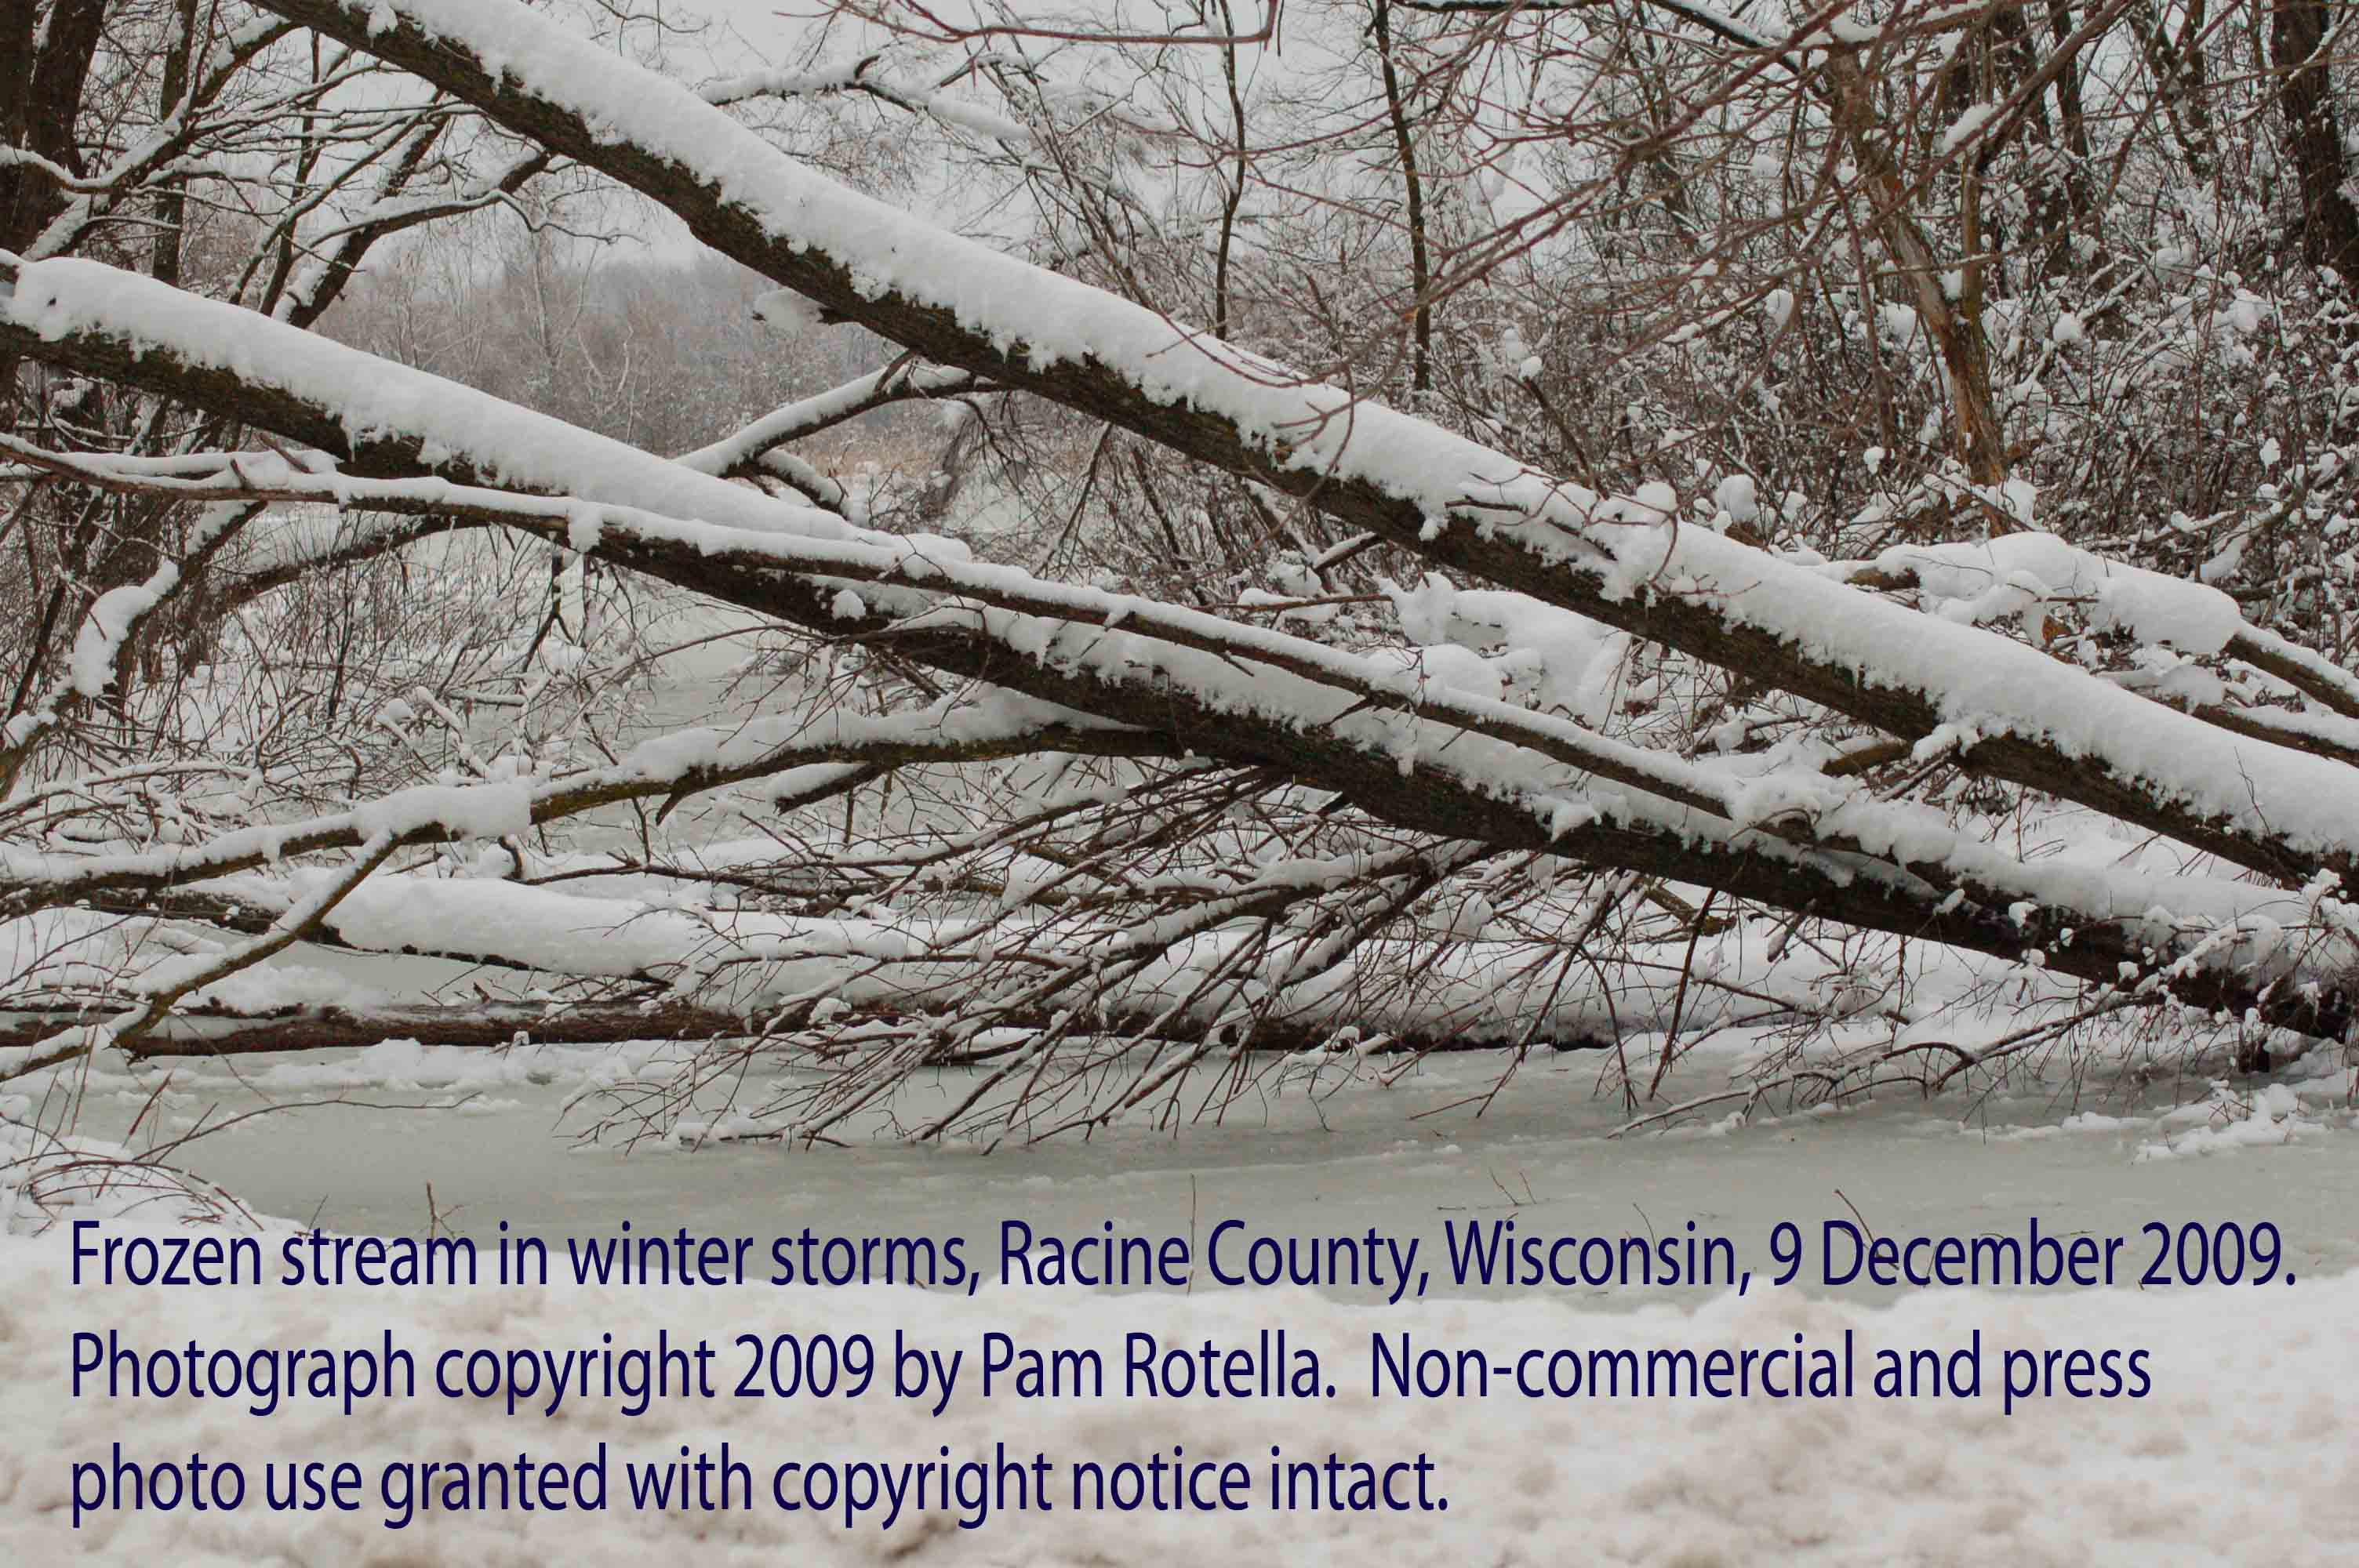 Winter storms, frozen stream, Racine County, WI, 9 Dec 2009